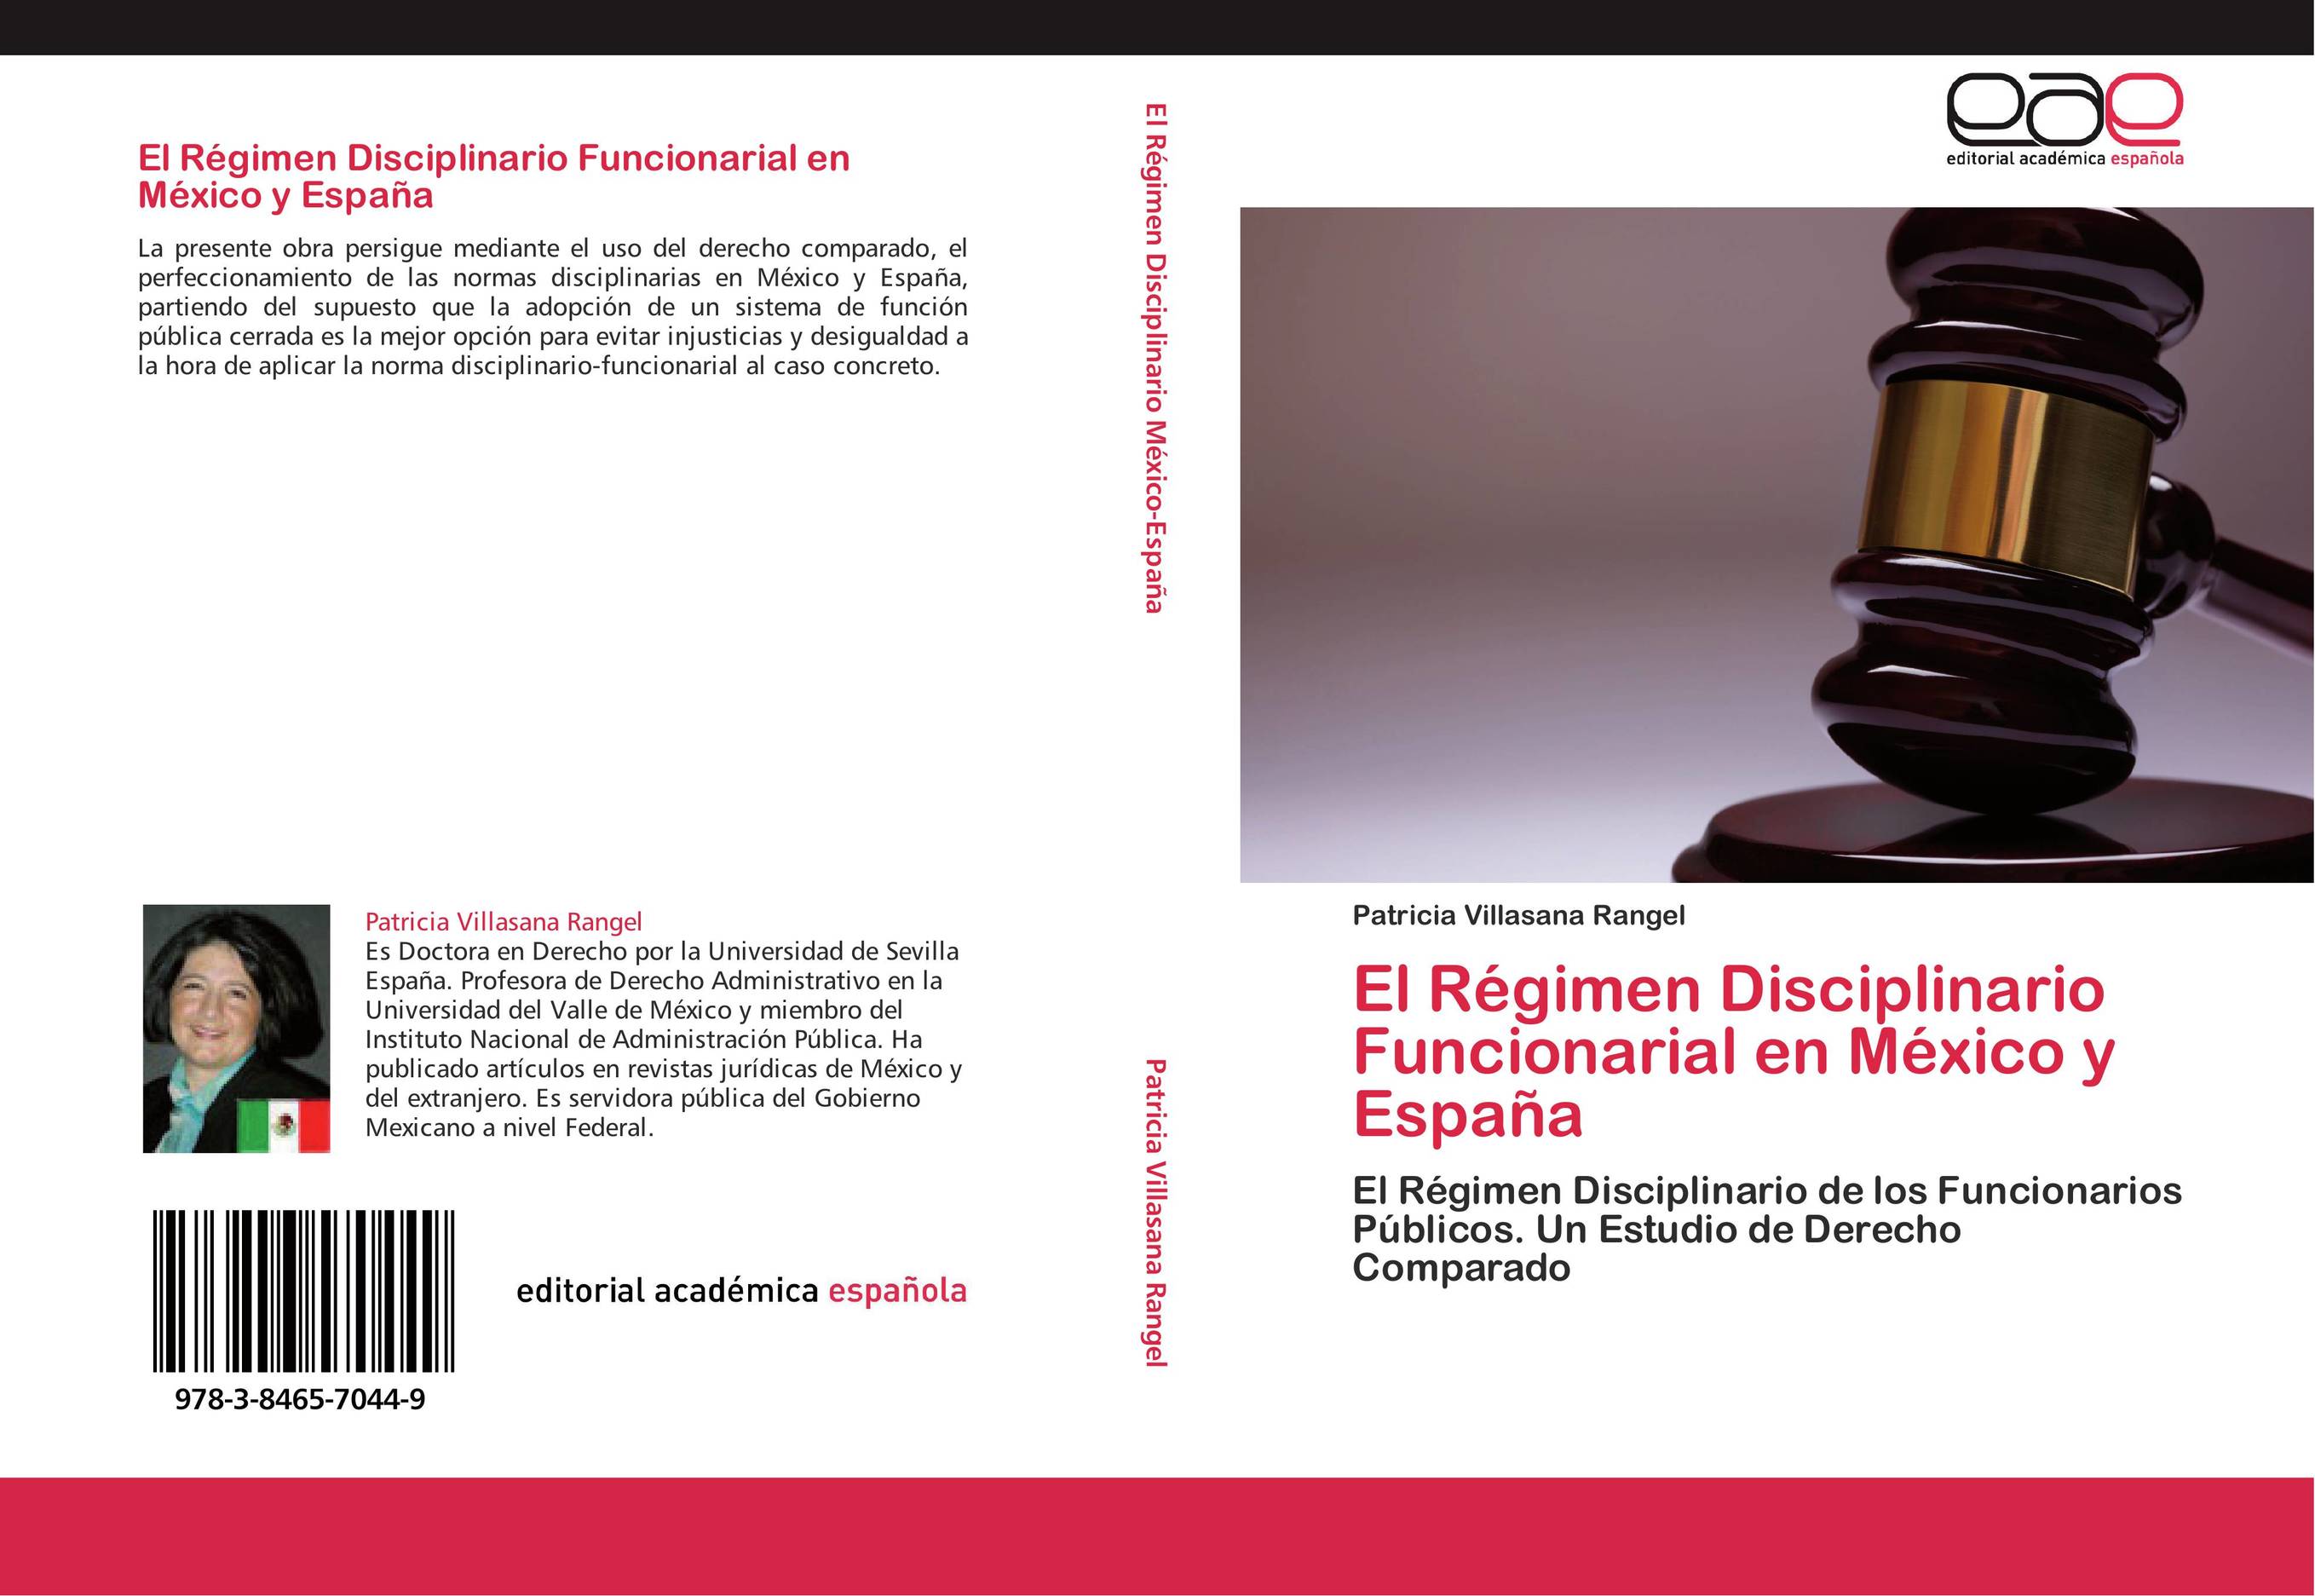 El Régimen Disciplinario Funcionarial en México y España